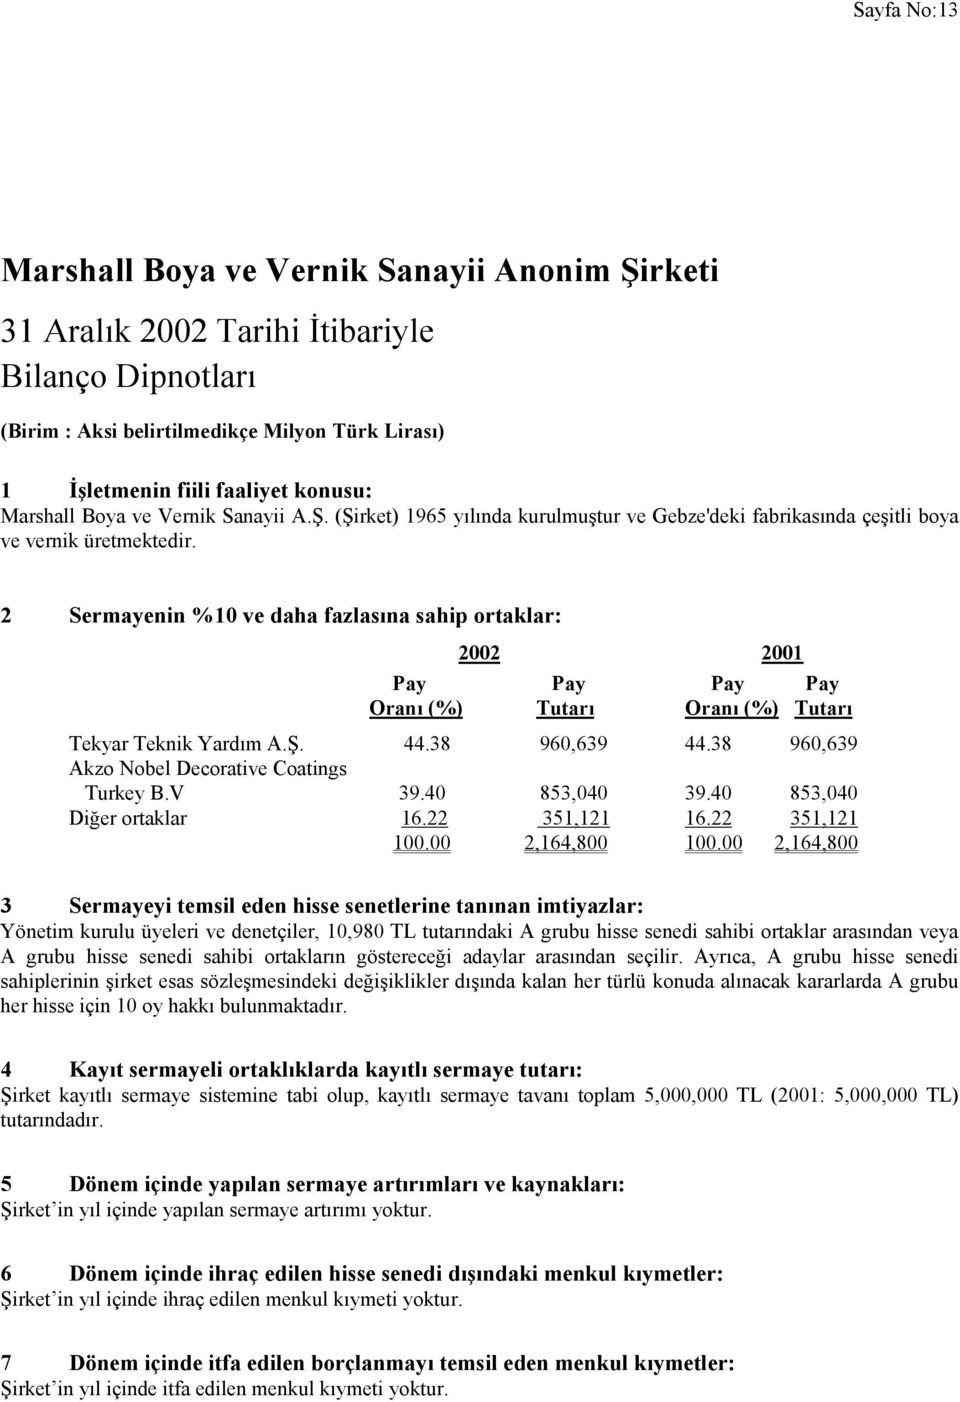 2 Sermayenin %10 ve daha fazlasına sahip ortaklar: Pay Pay Pay Pay Oranı (%) Tutarı Oranı (%) Tutarı Tekyar Teknik Yardım A.Ş. 44.38 960,639 44.38 960,639 Akzo Nobel Decorative Coatings Turkey B.V 39.